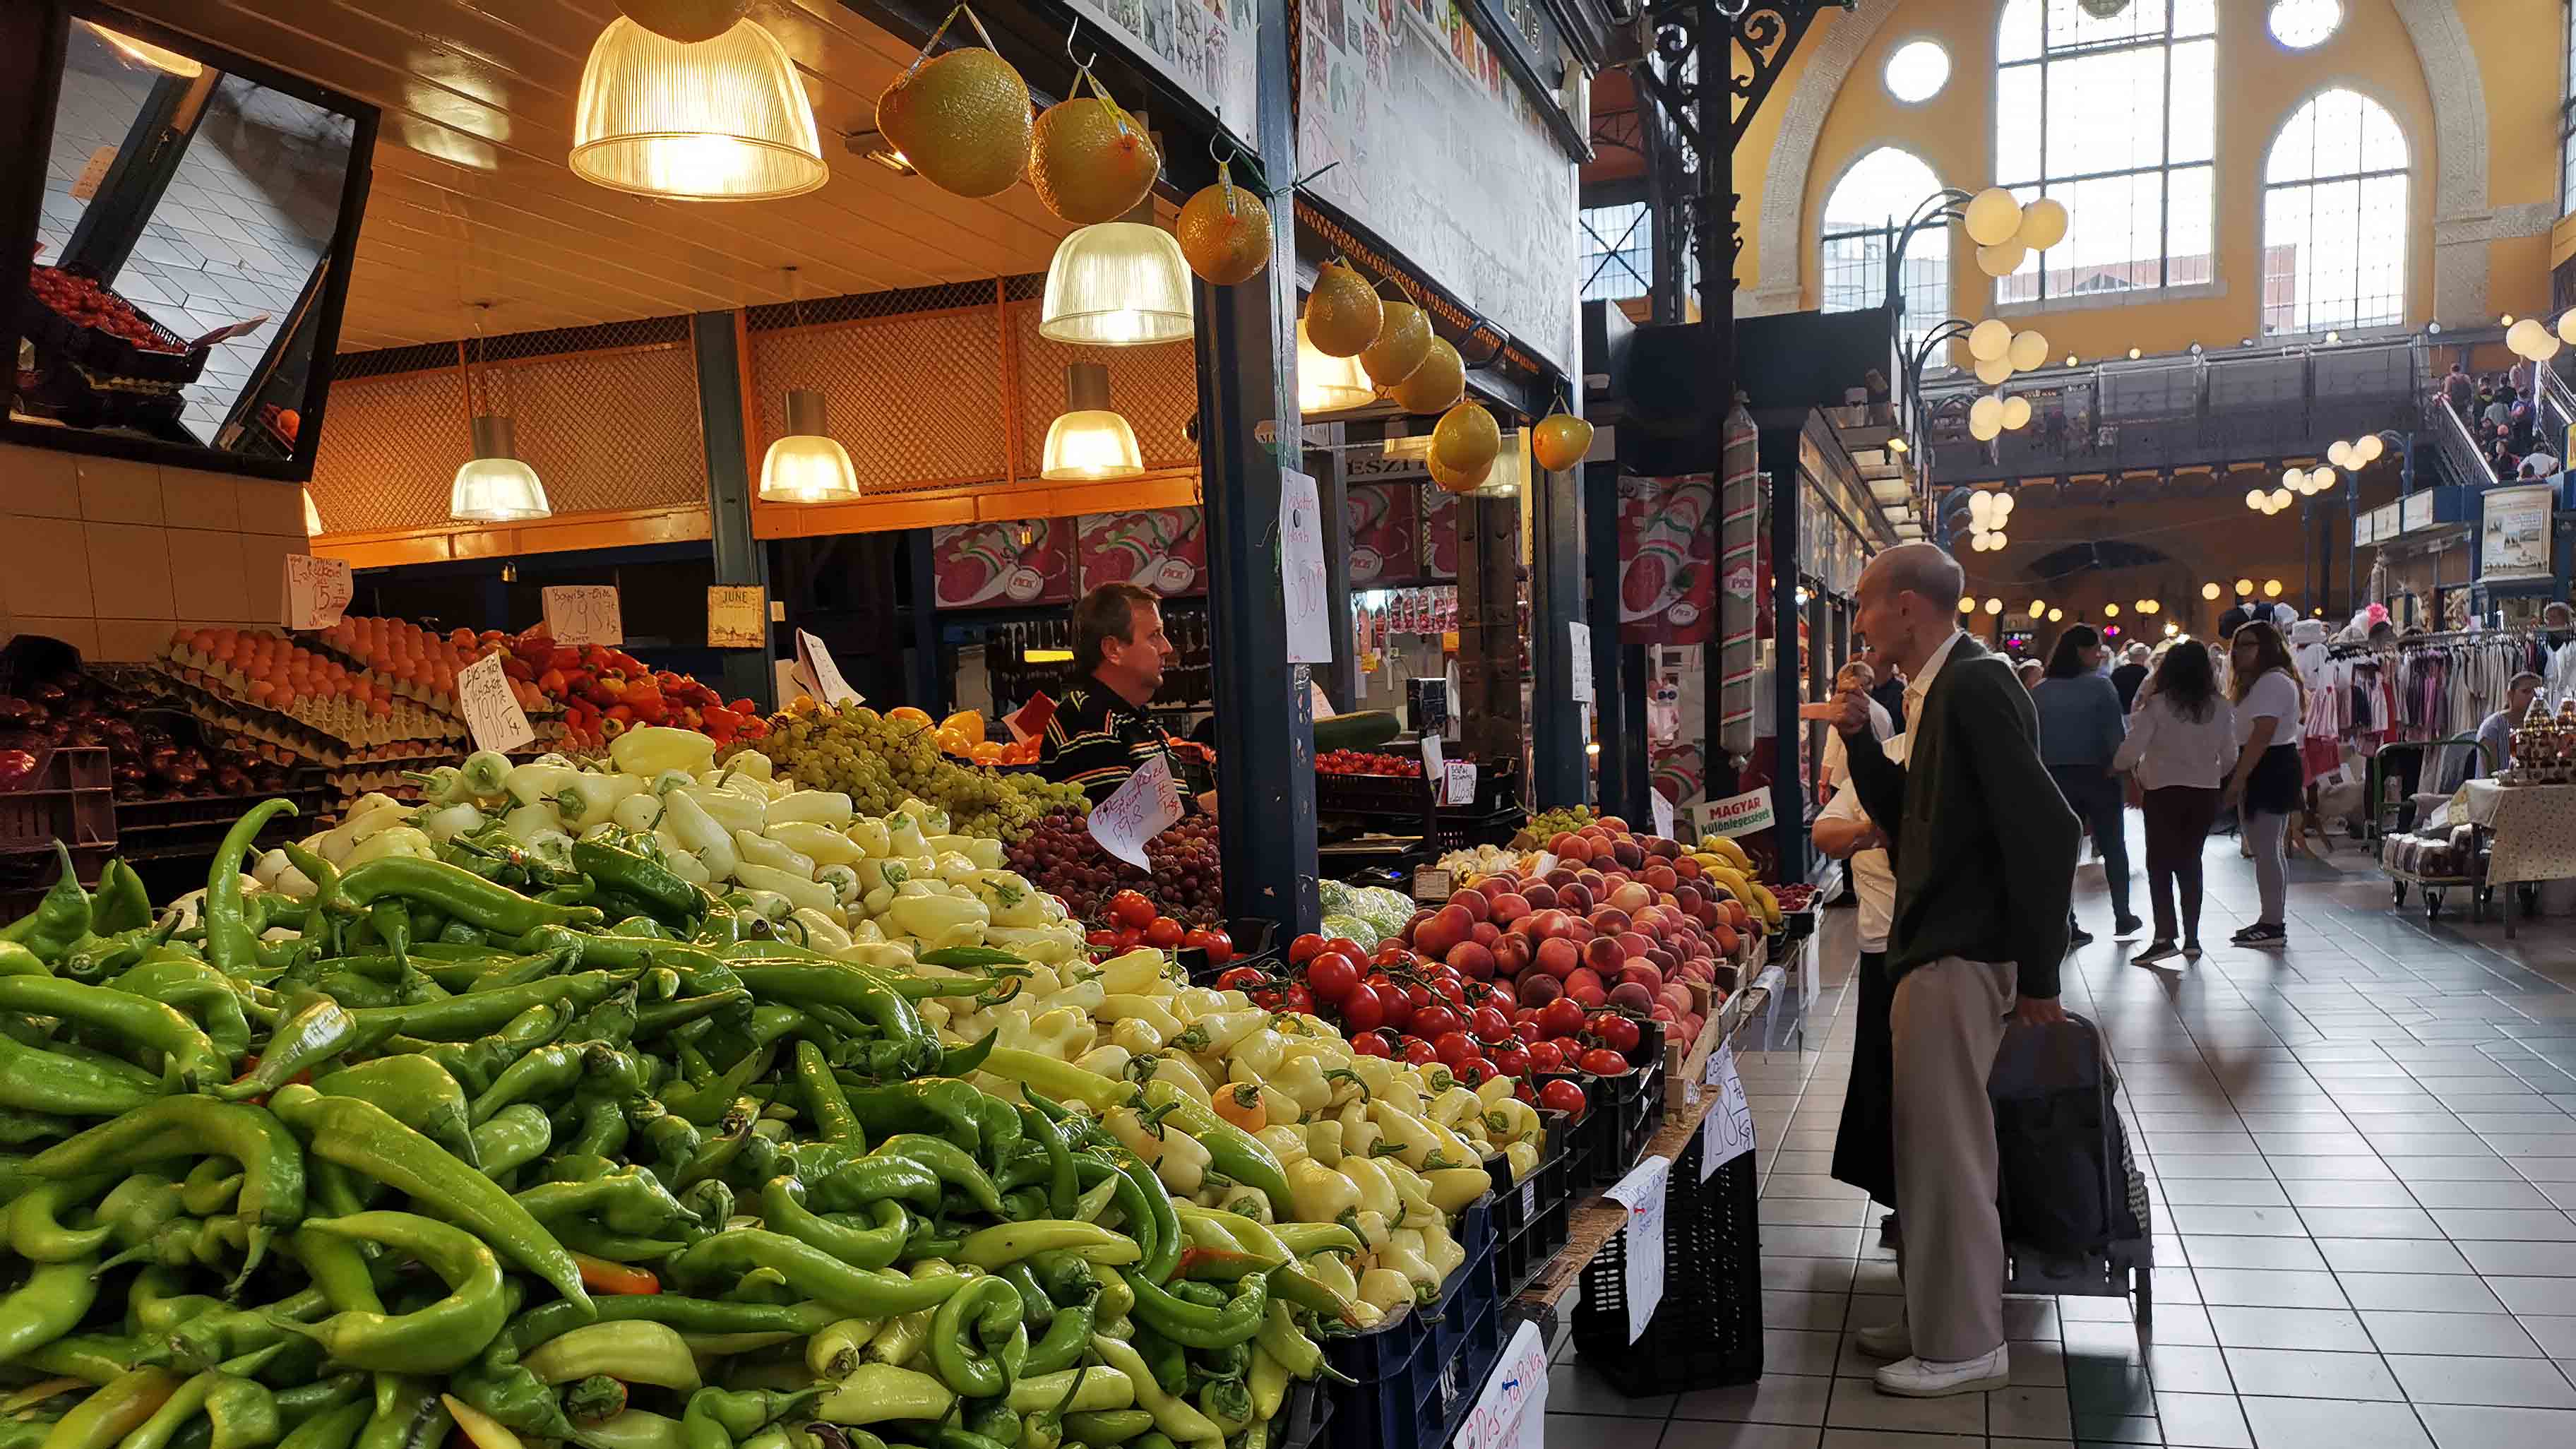 Velká tržnice Budapešť Fővám tér obchod se zeleninou a ovocem